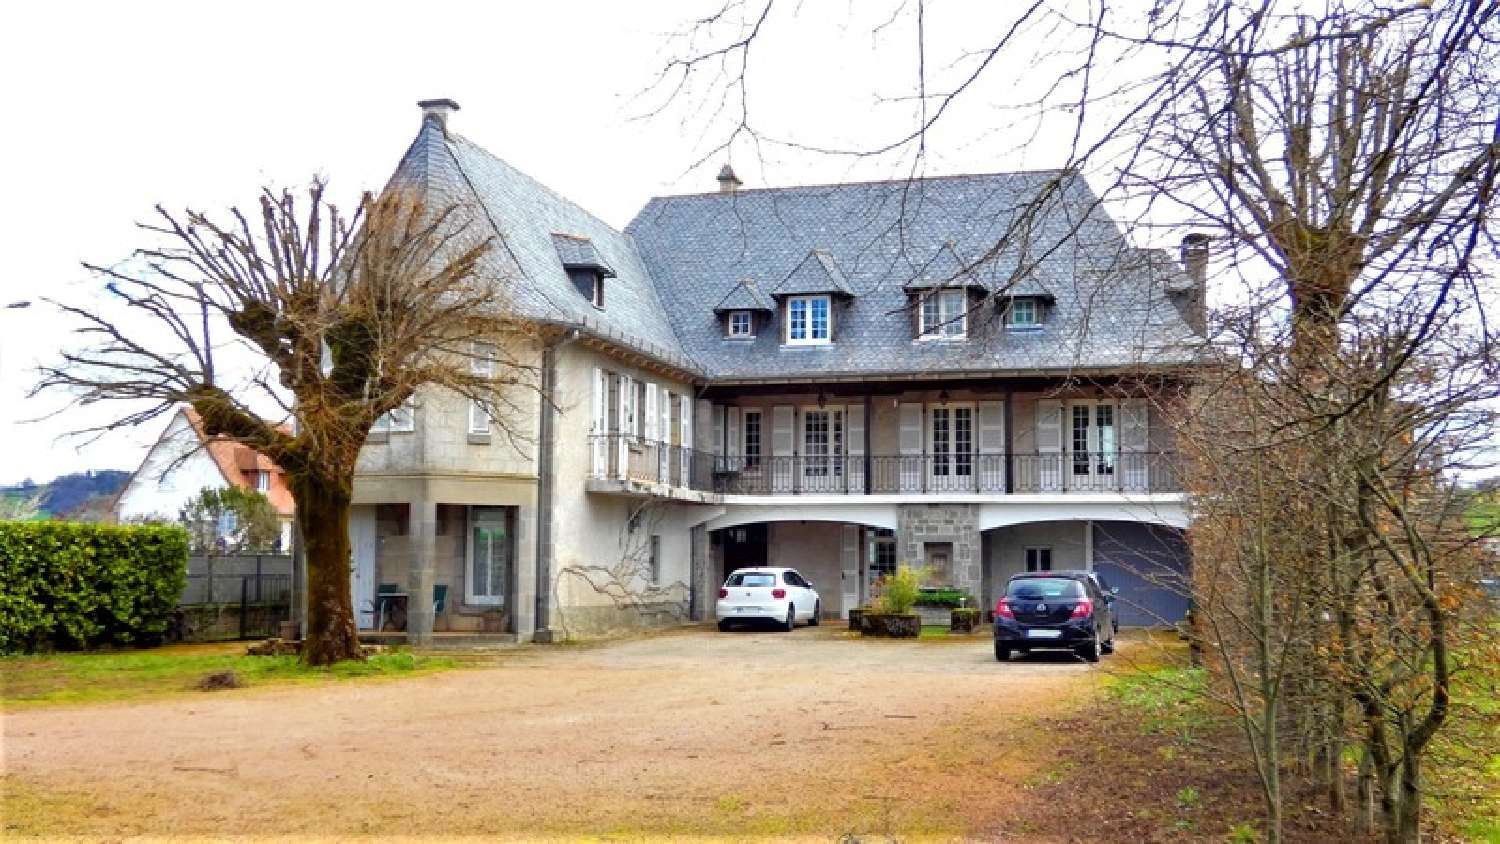  à vendre maison bourgeoise Arpajon-sur-Cère Cantal 1